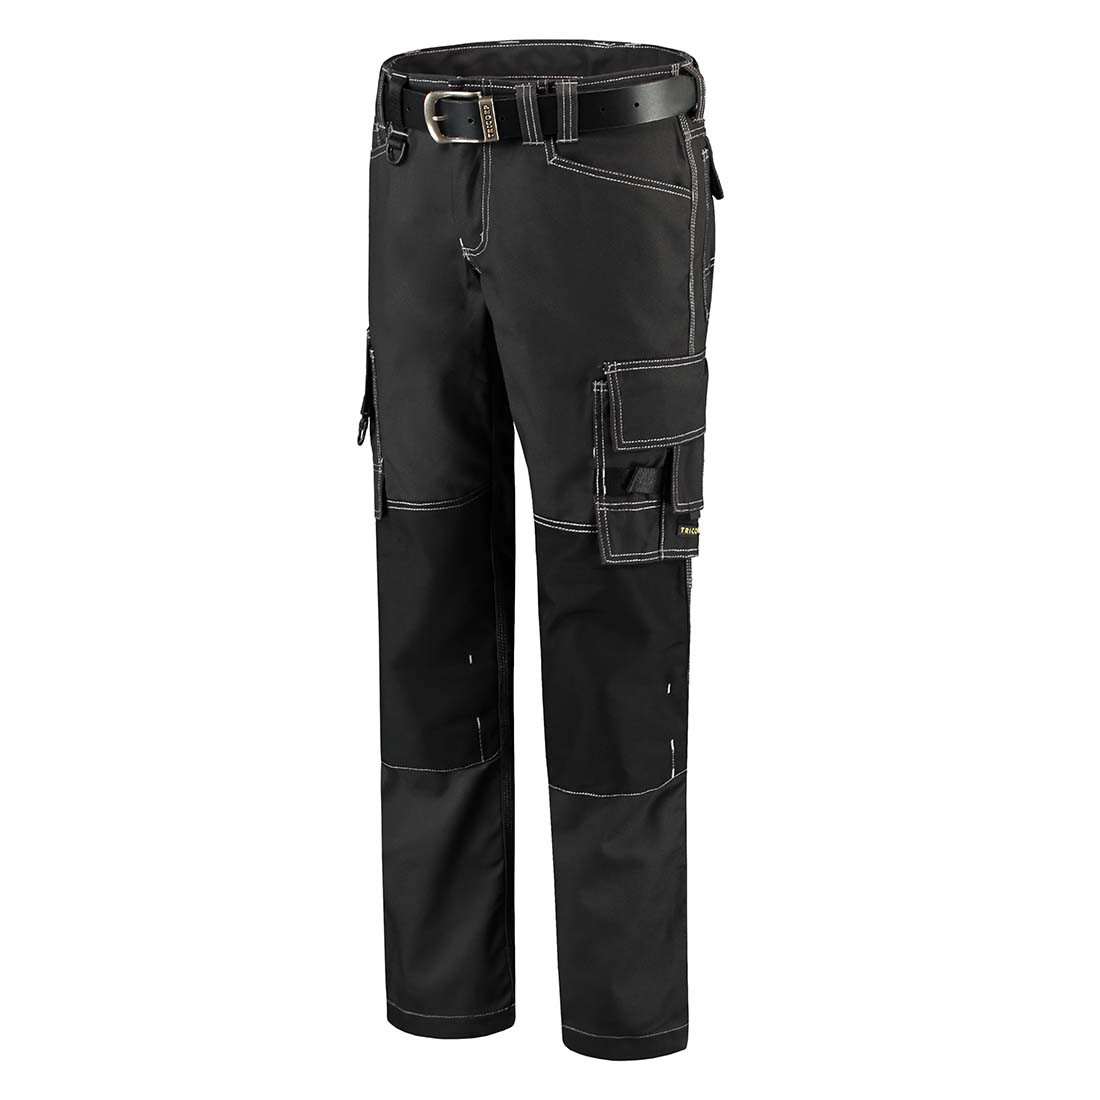 Pantalon de travail unisex CORDURA - Les vêtements de protection